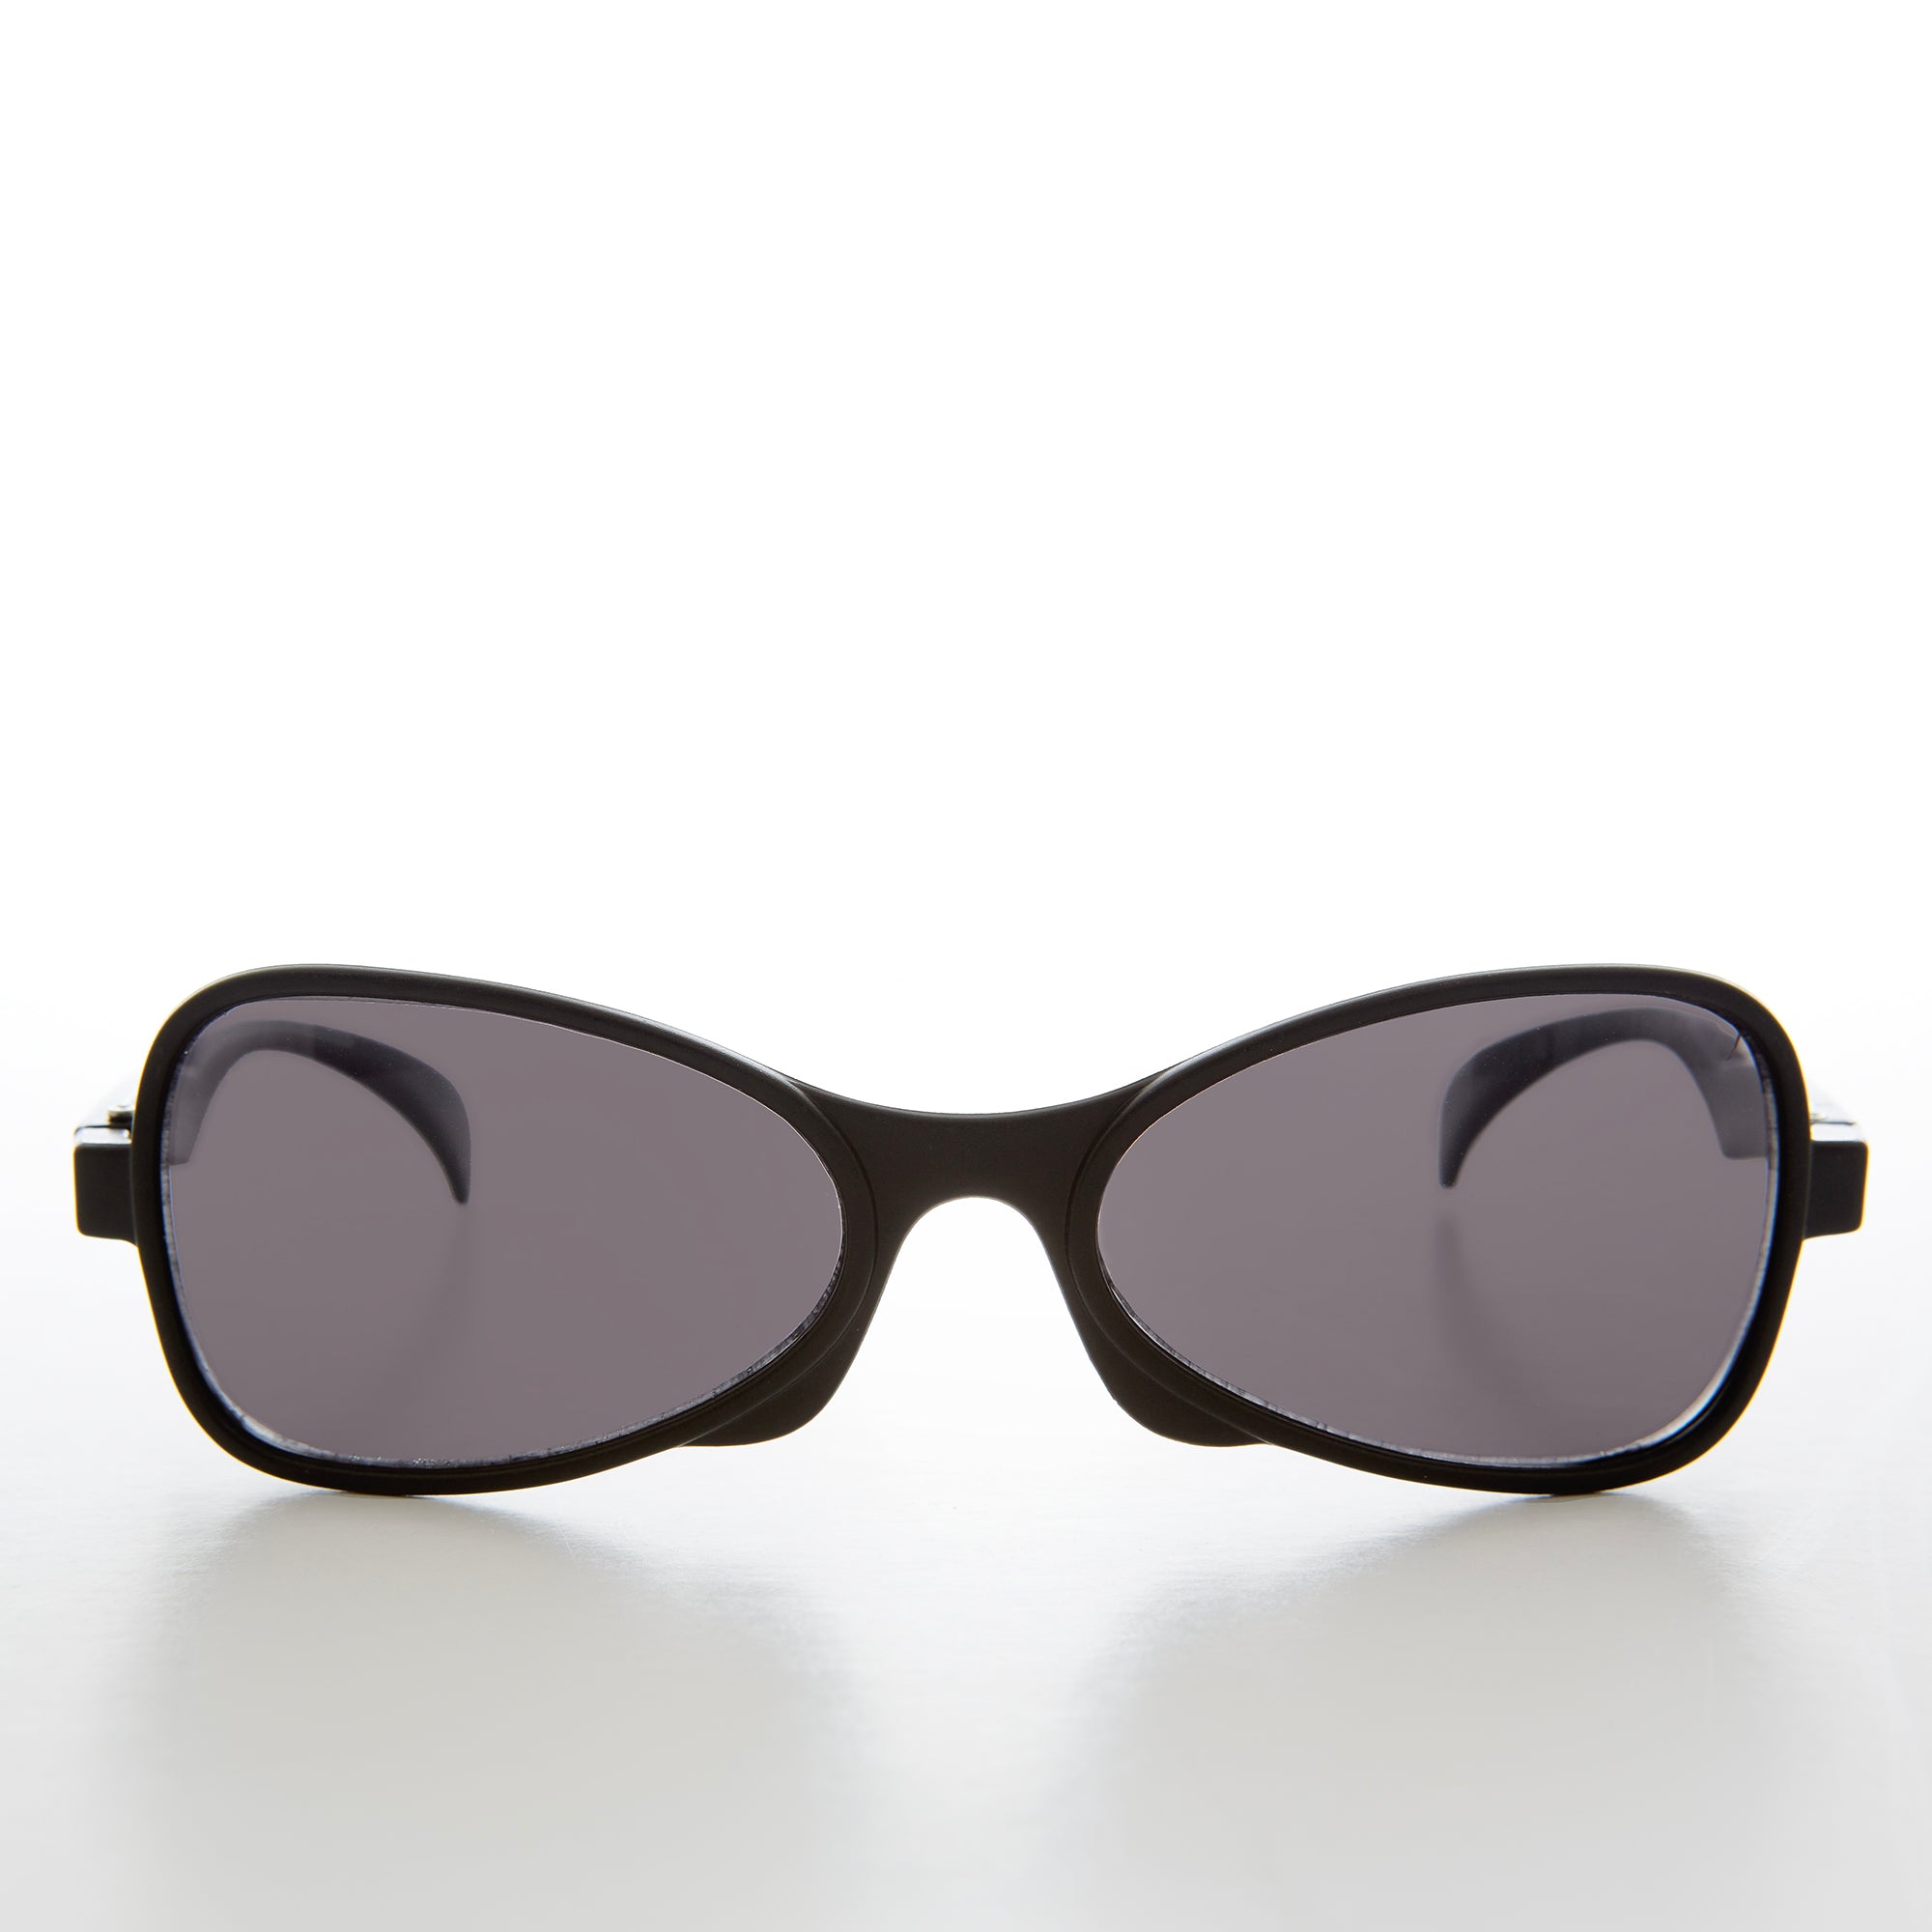 Black Futuristic Style Vintage Sunglasses